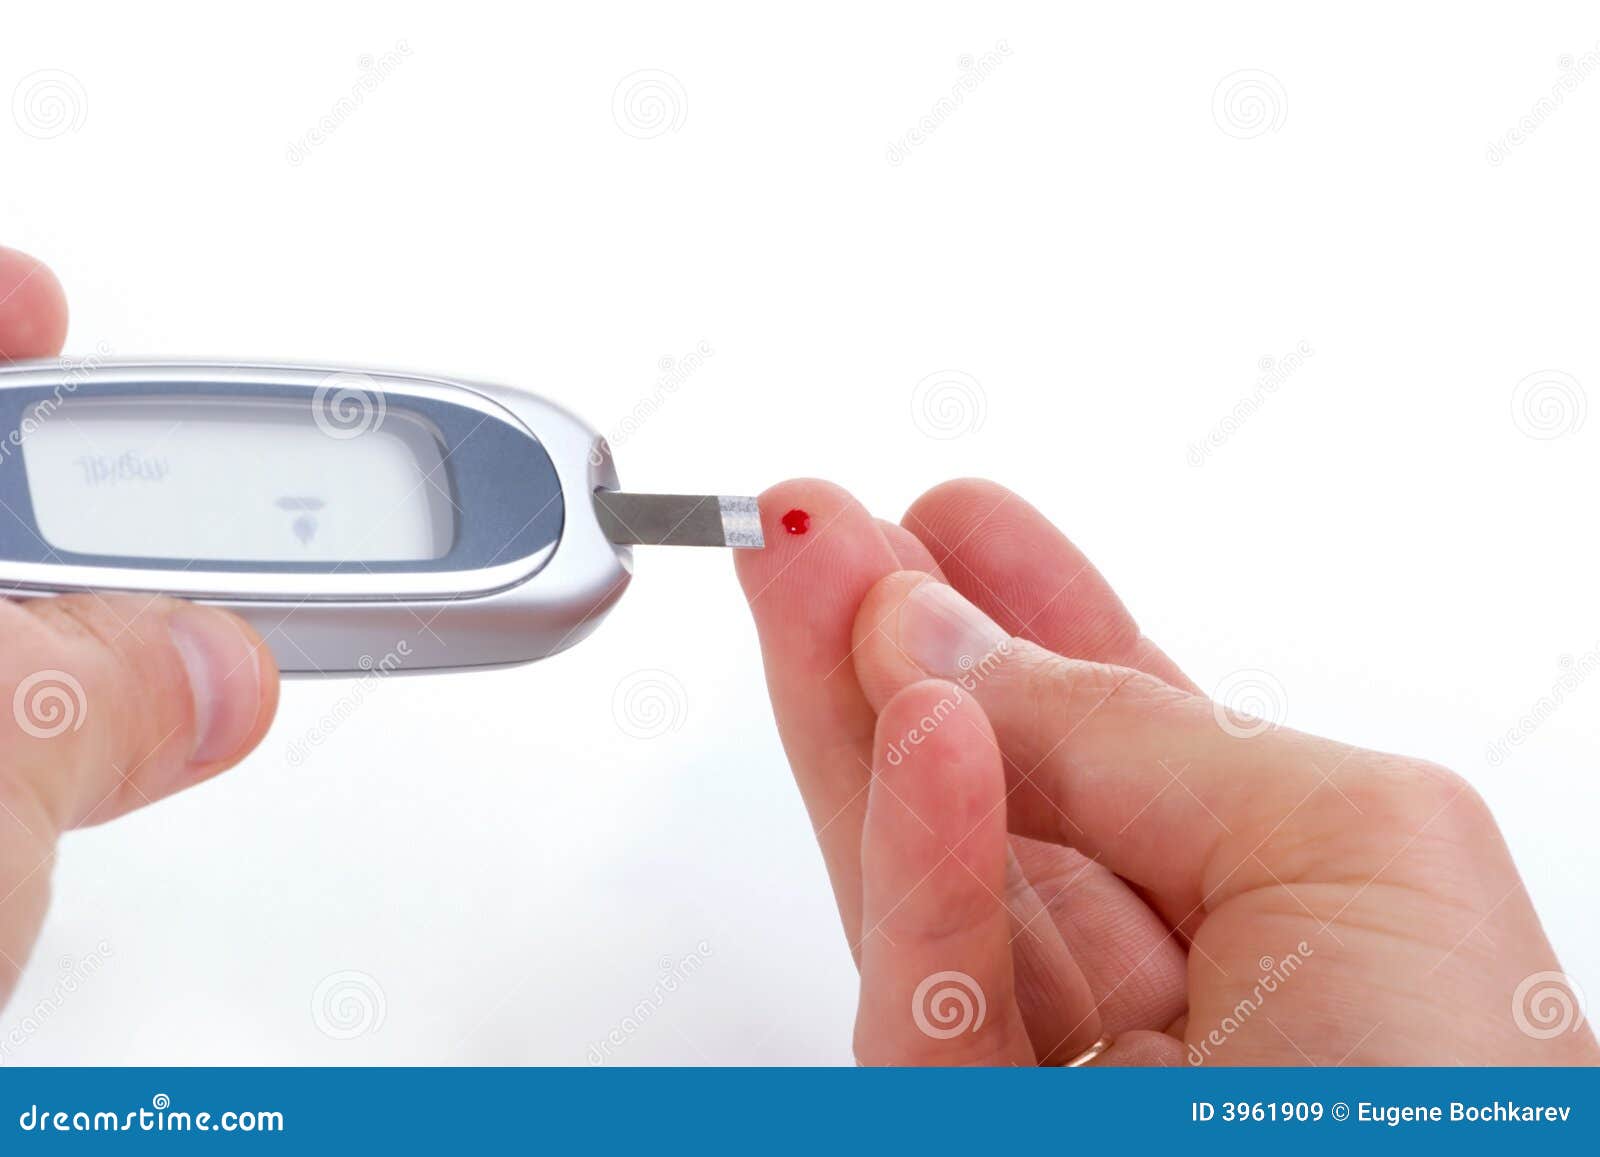 Análisis de sangre llano de la glucosa. El diabético está haciendo un análisis de sangre del dedo del nivel de la glucosa